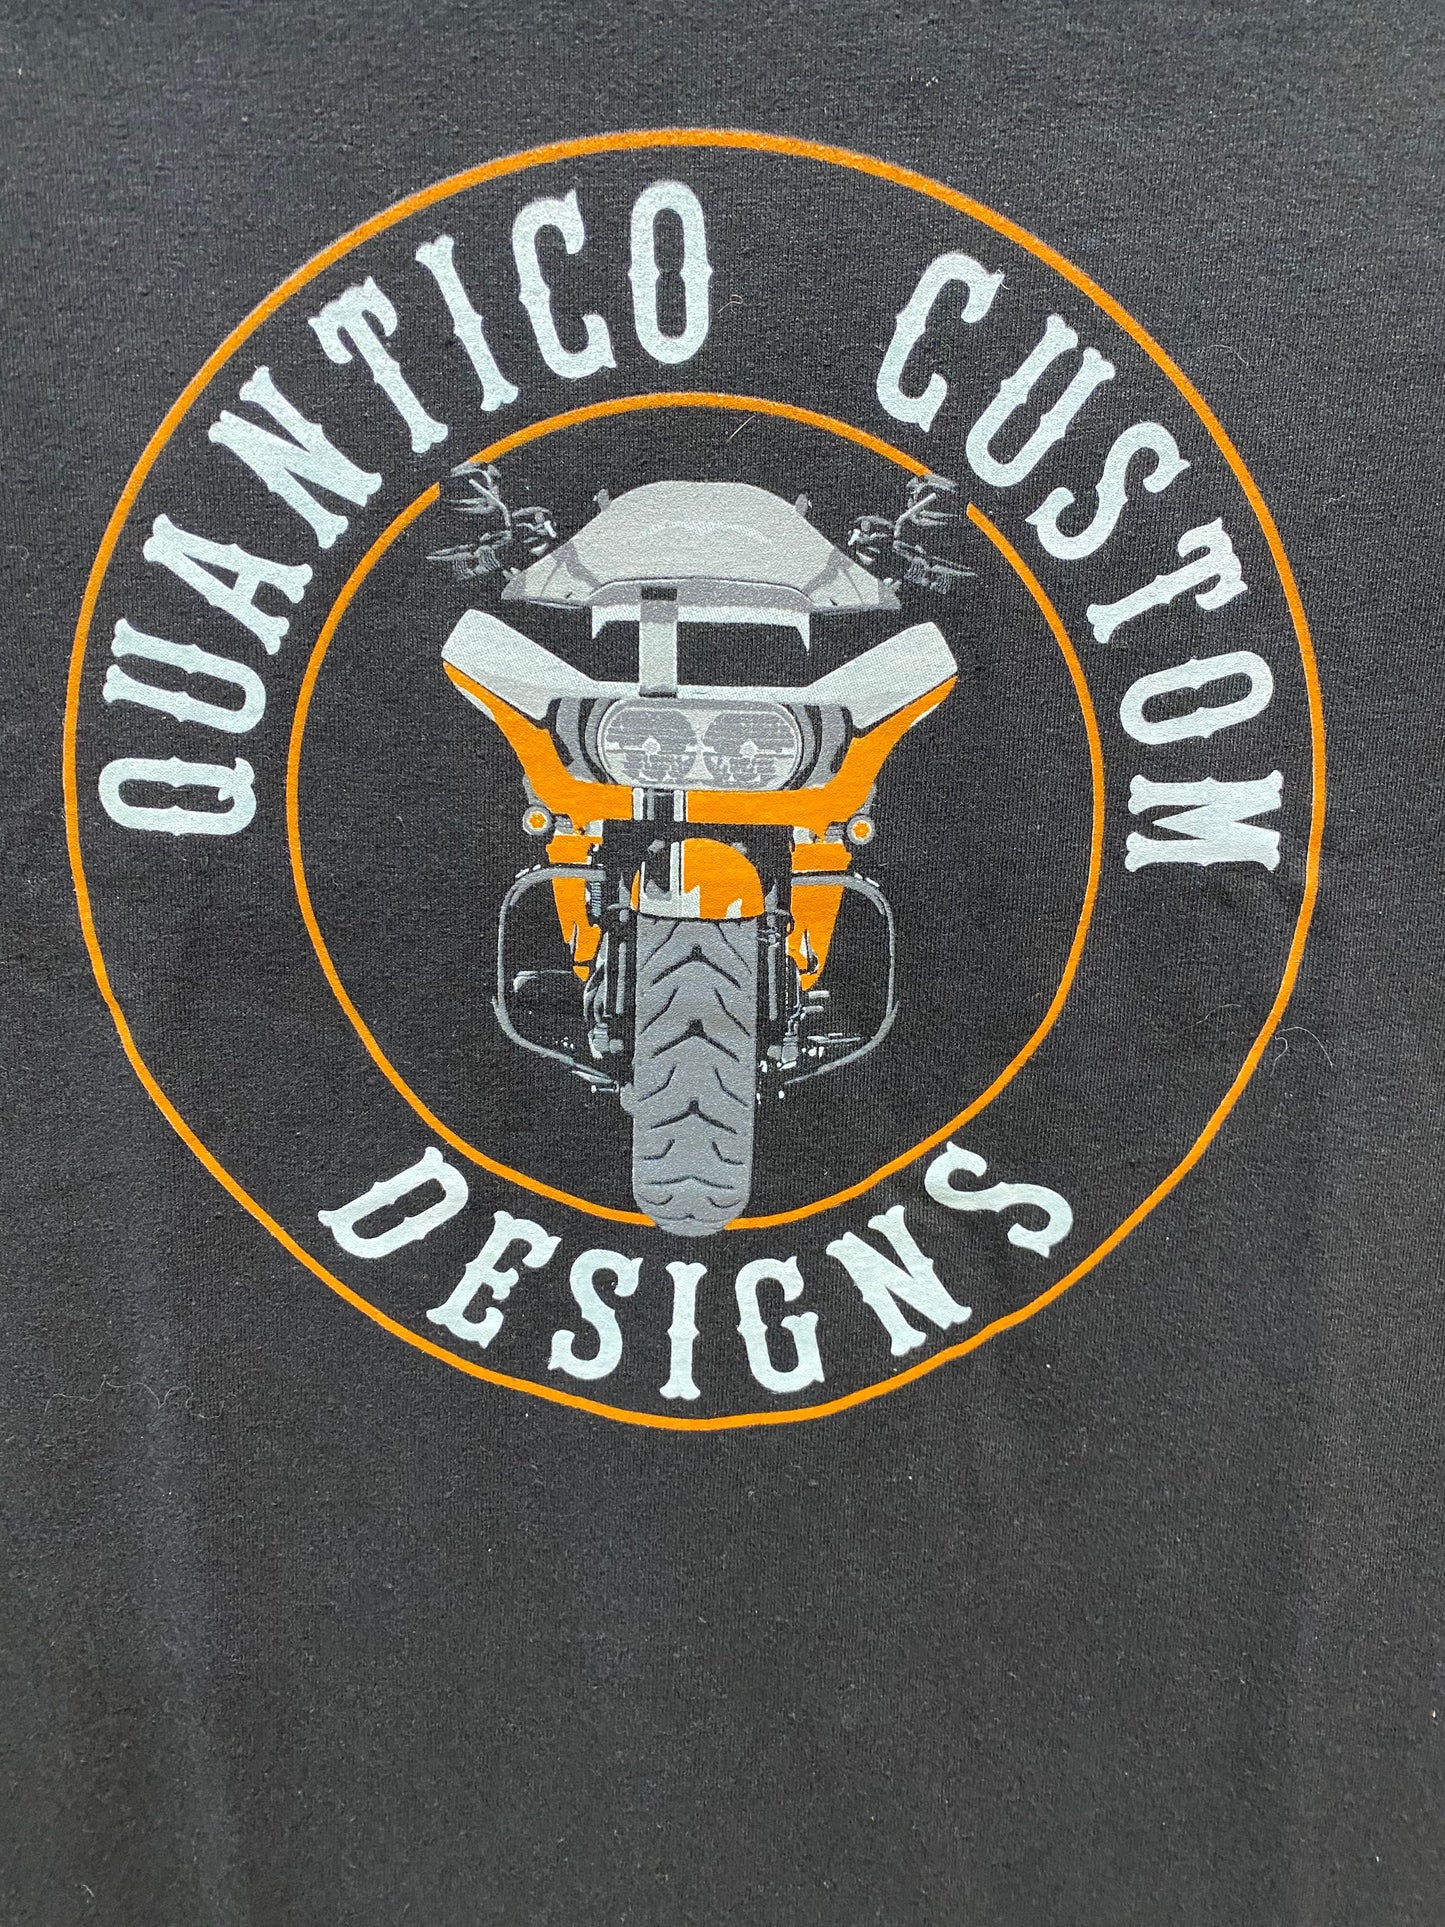 Quantico Customs We Void Warranties T-Shirt - Harley Davidson of Quantico